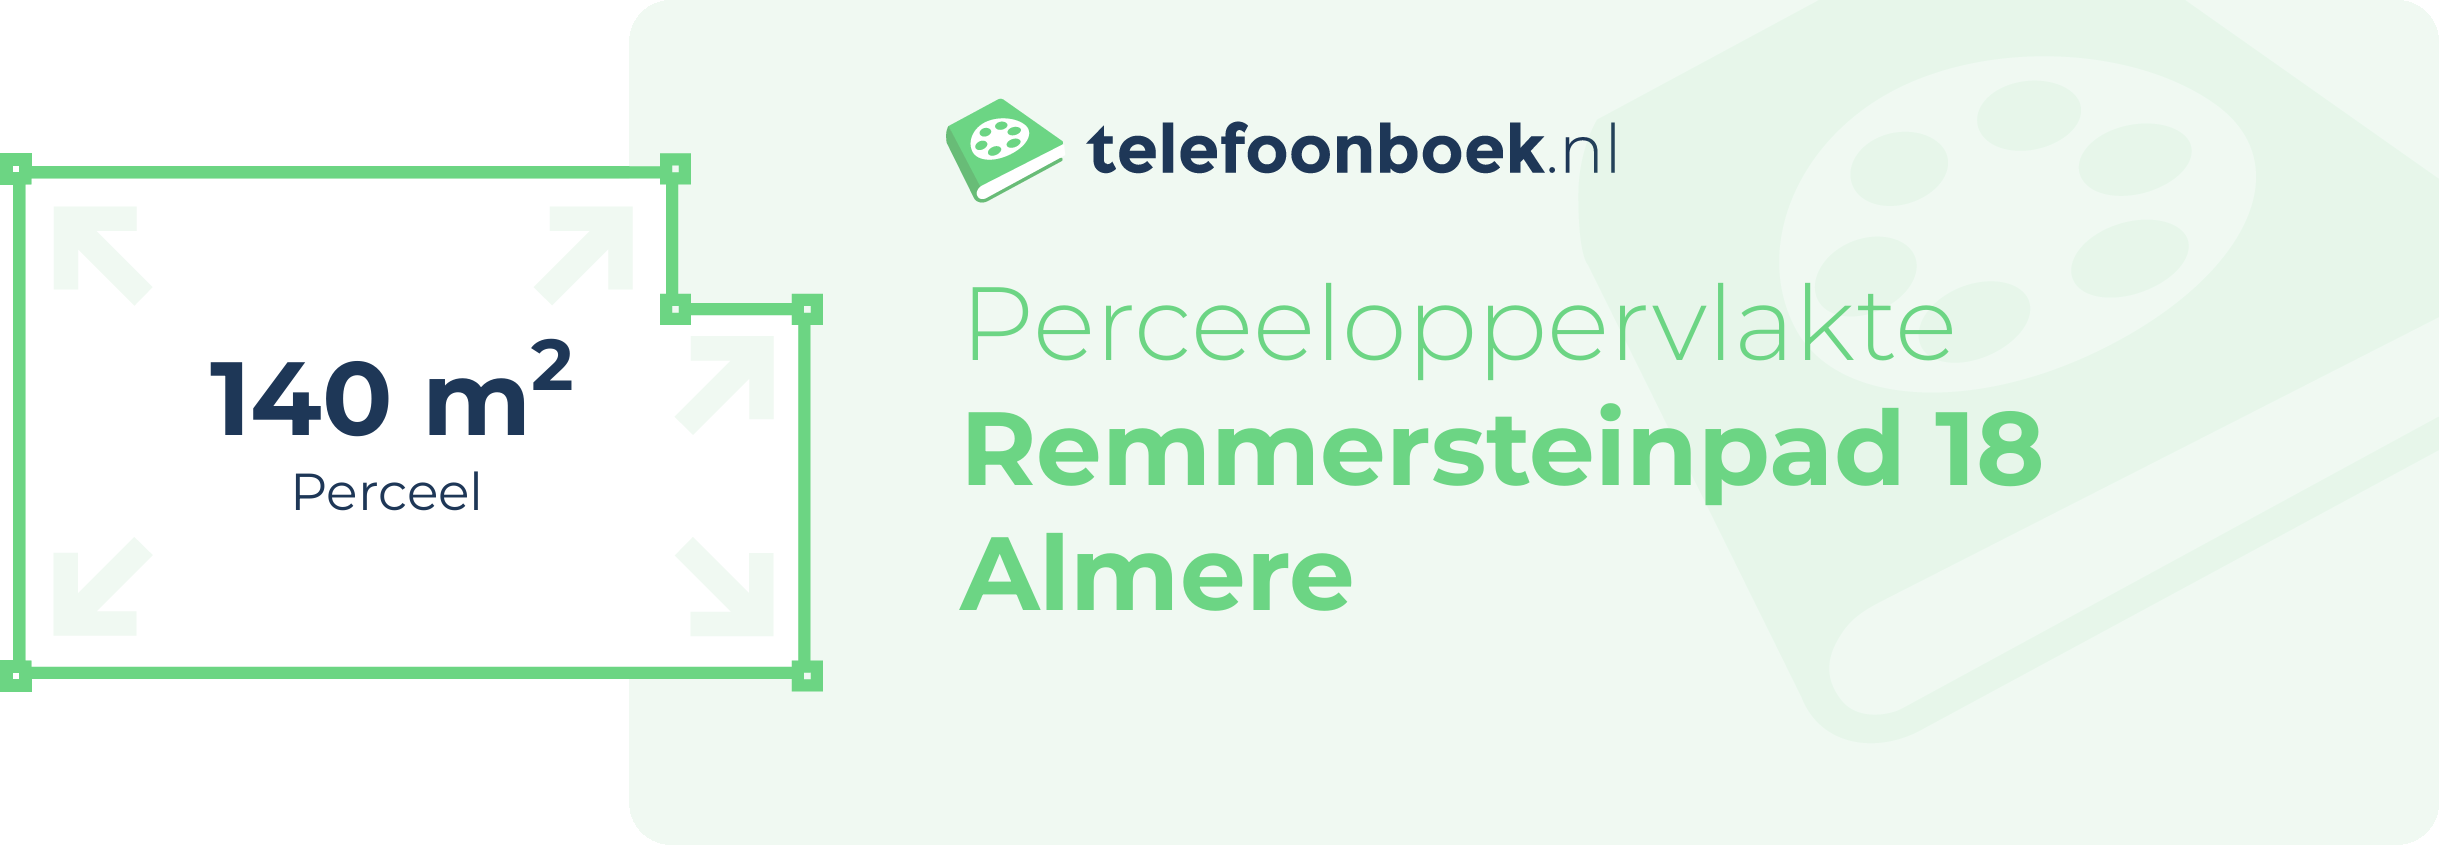 Perceeloppervlakte Remmersteinpad 18 Almere